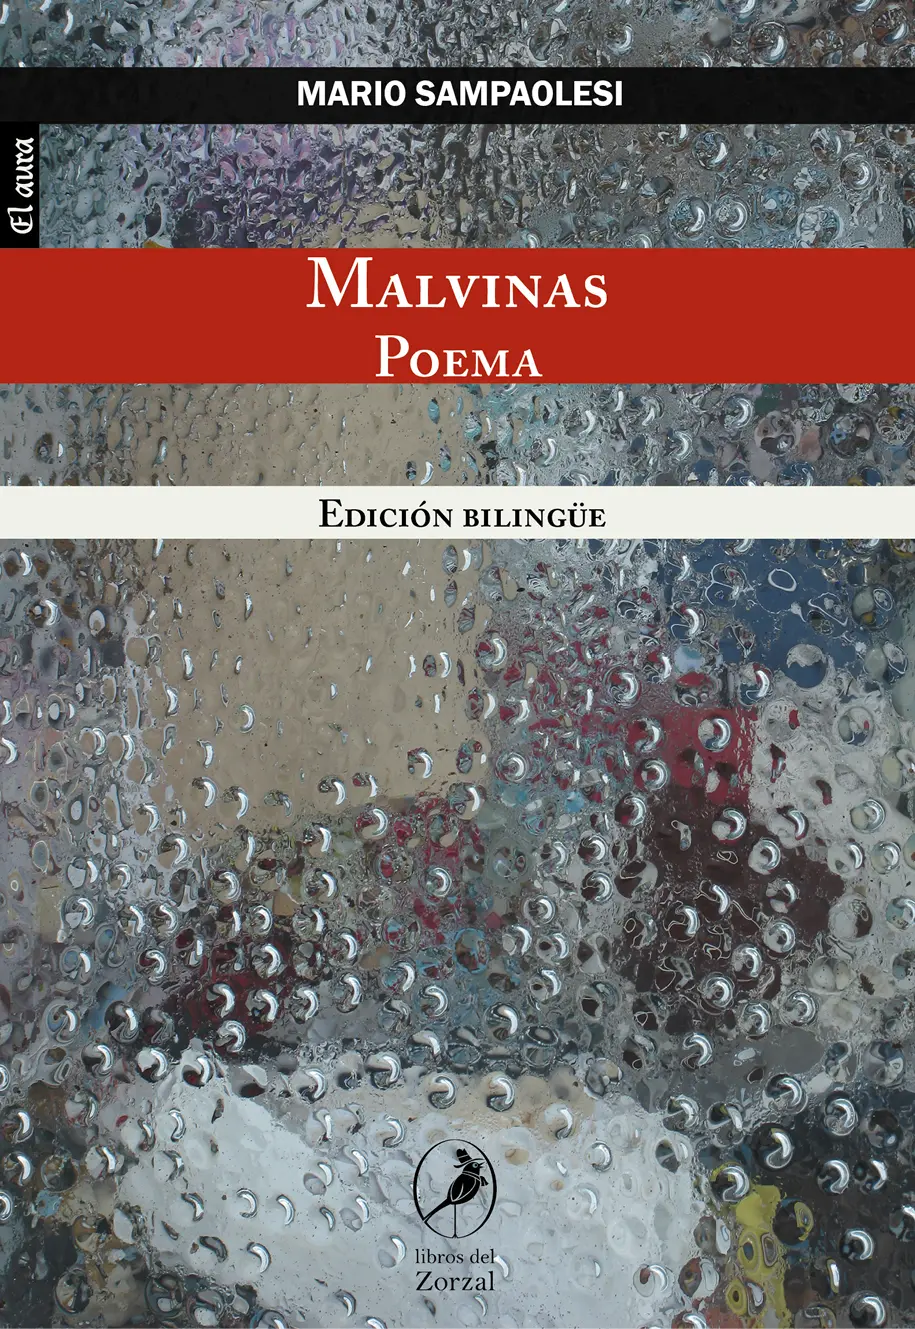 Mario Sampaolesi Malvinas Poema Edición bilingüe Traducido al inglés por Ian - фото 1